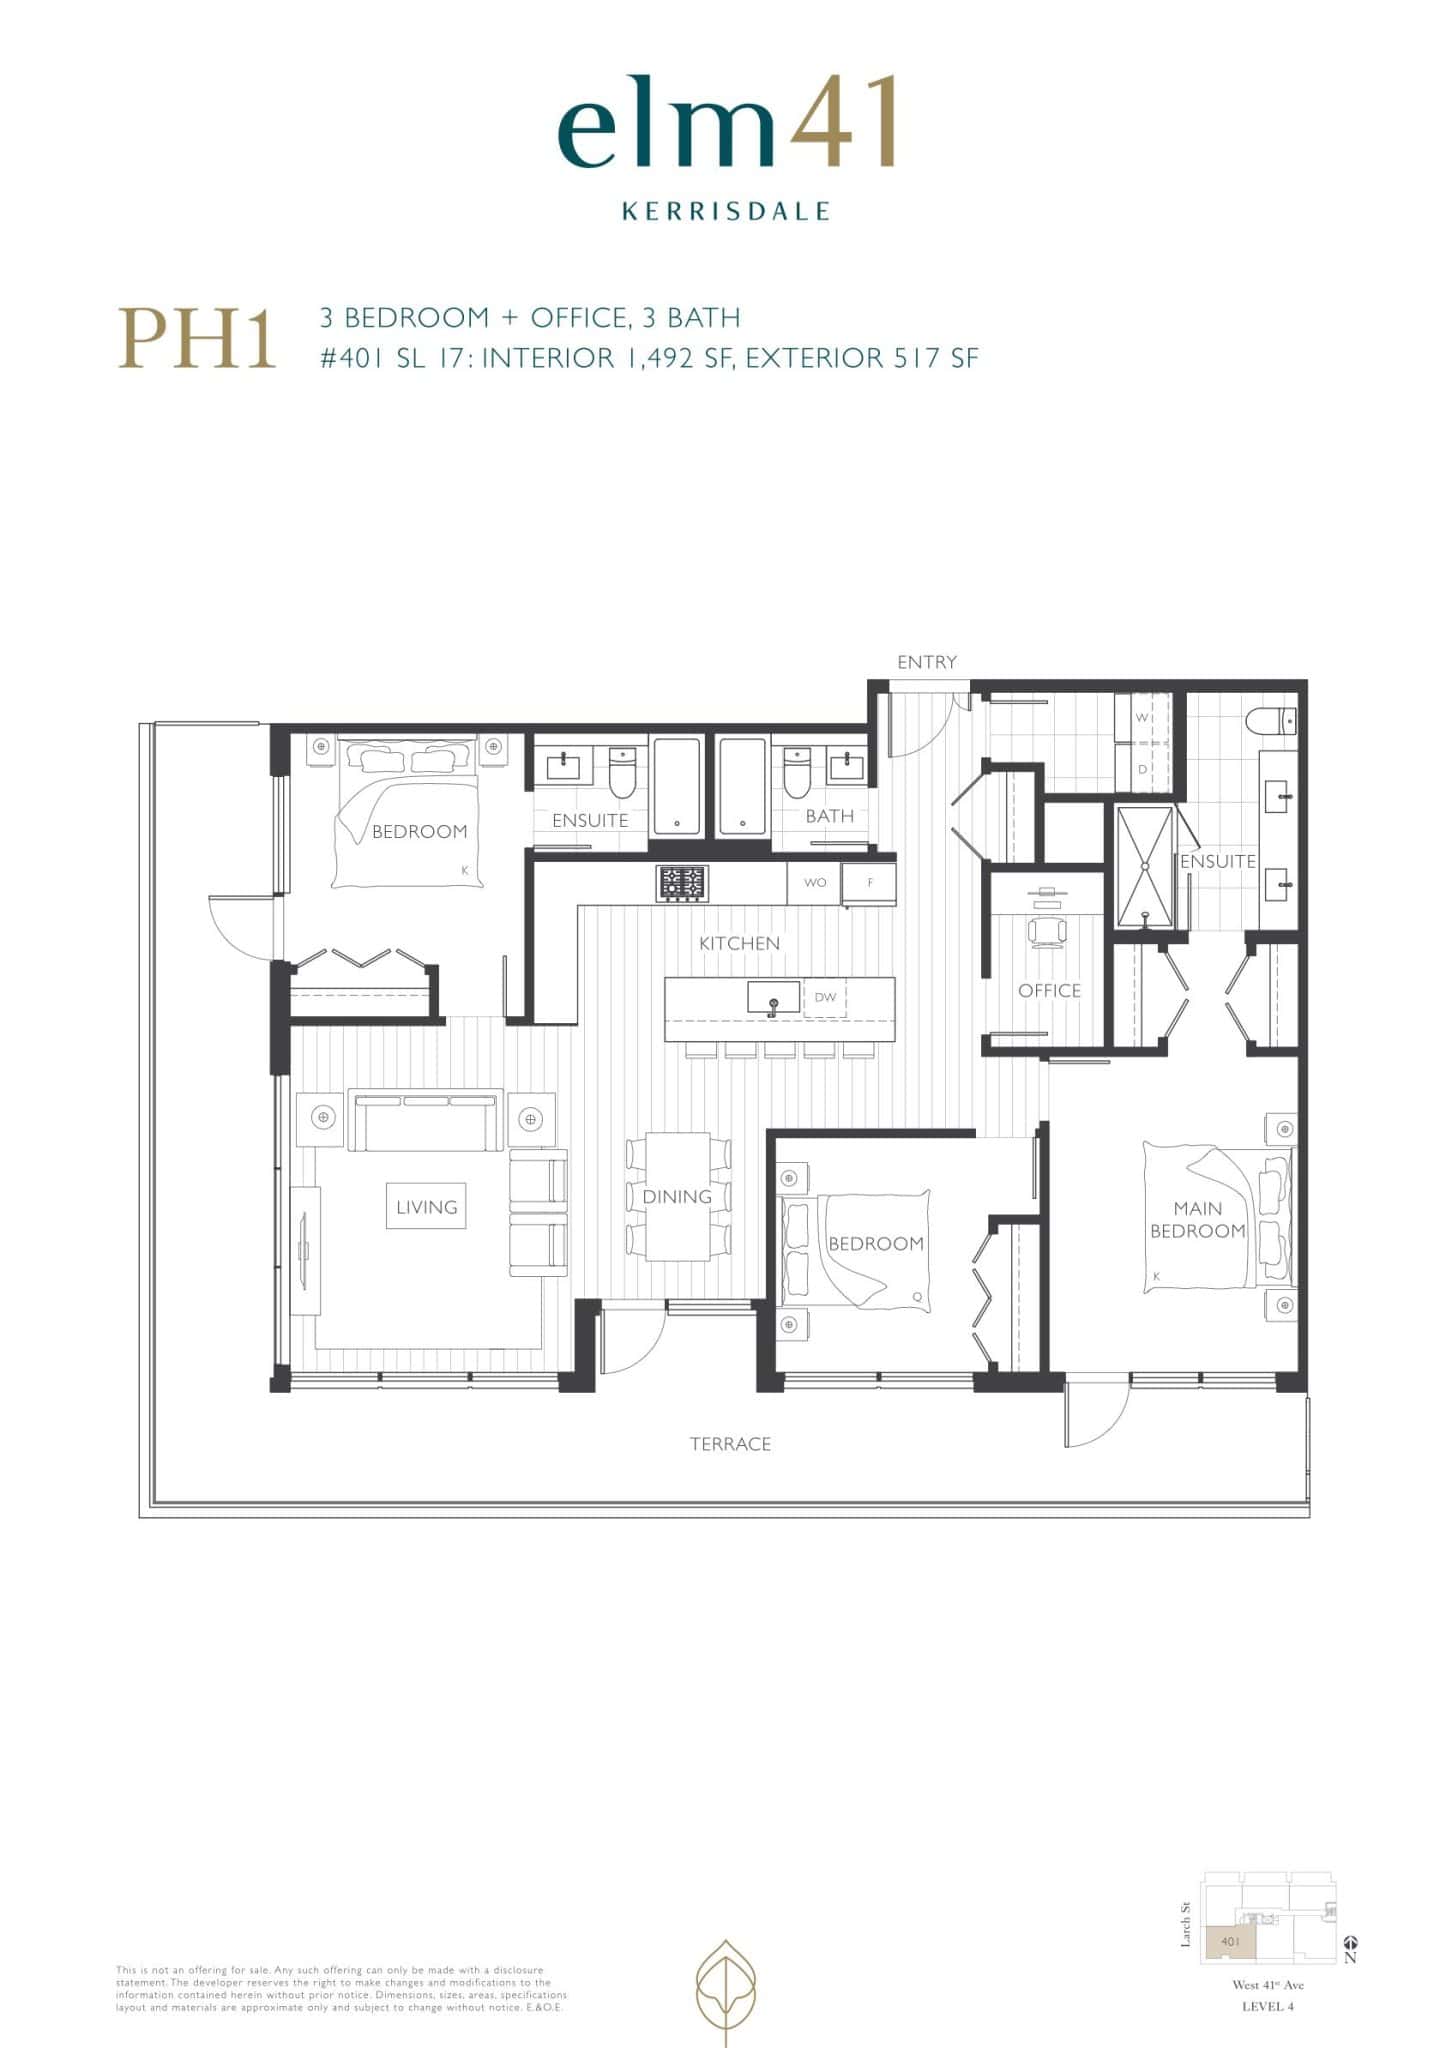 Elm 41 - Floor Plan - PH1